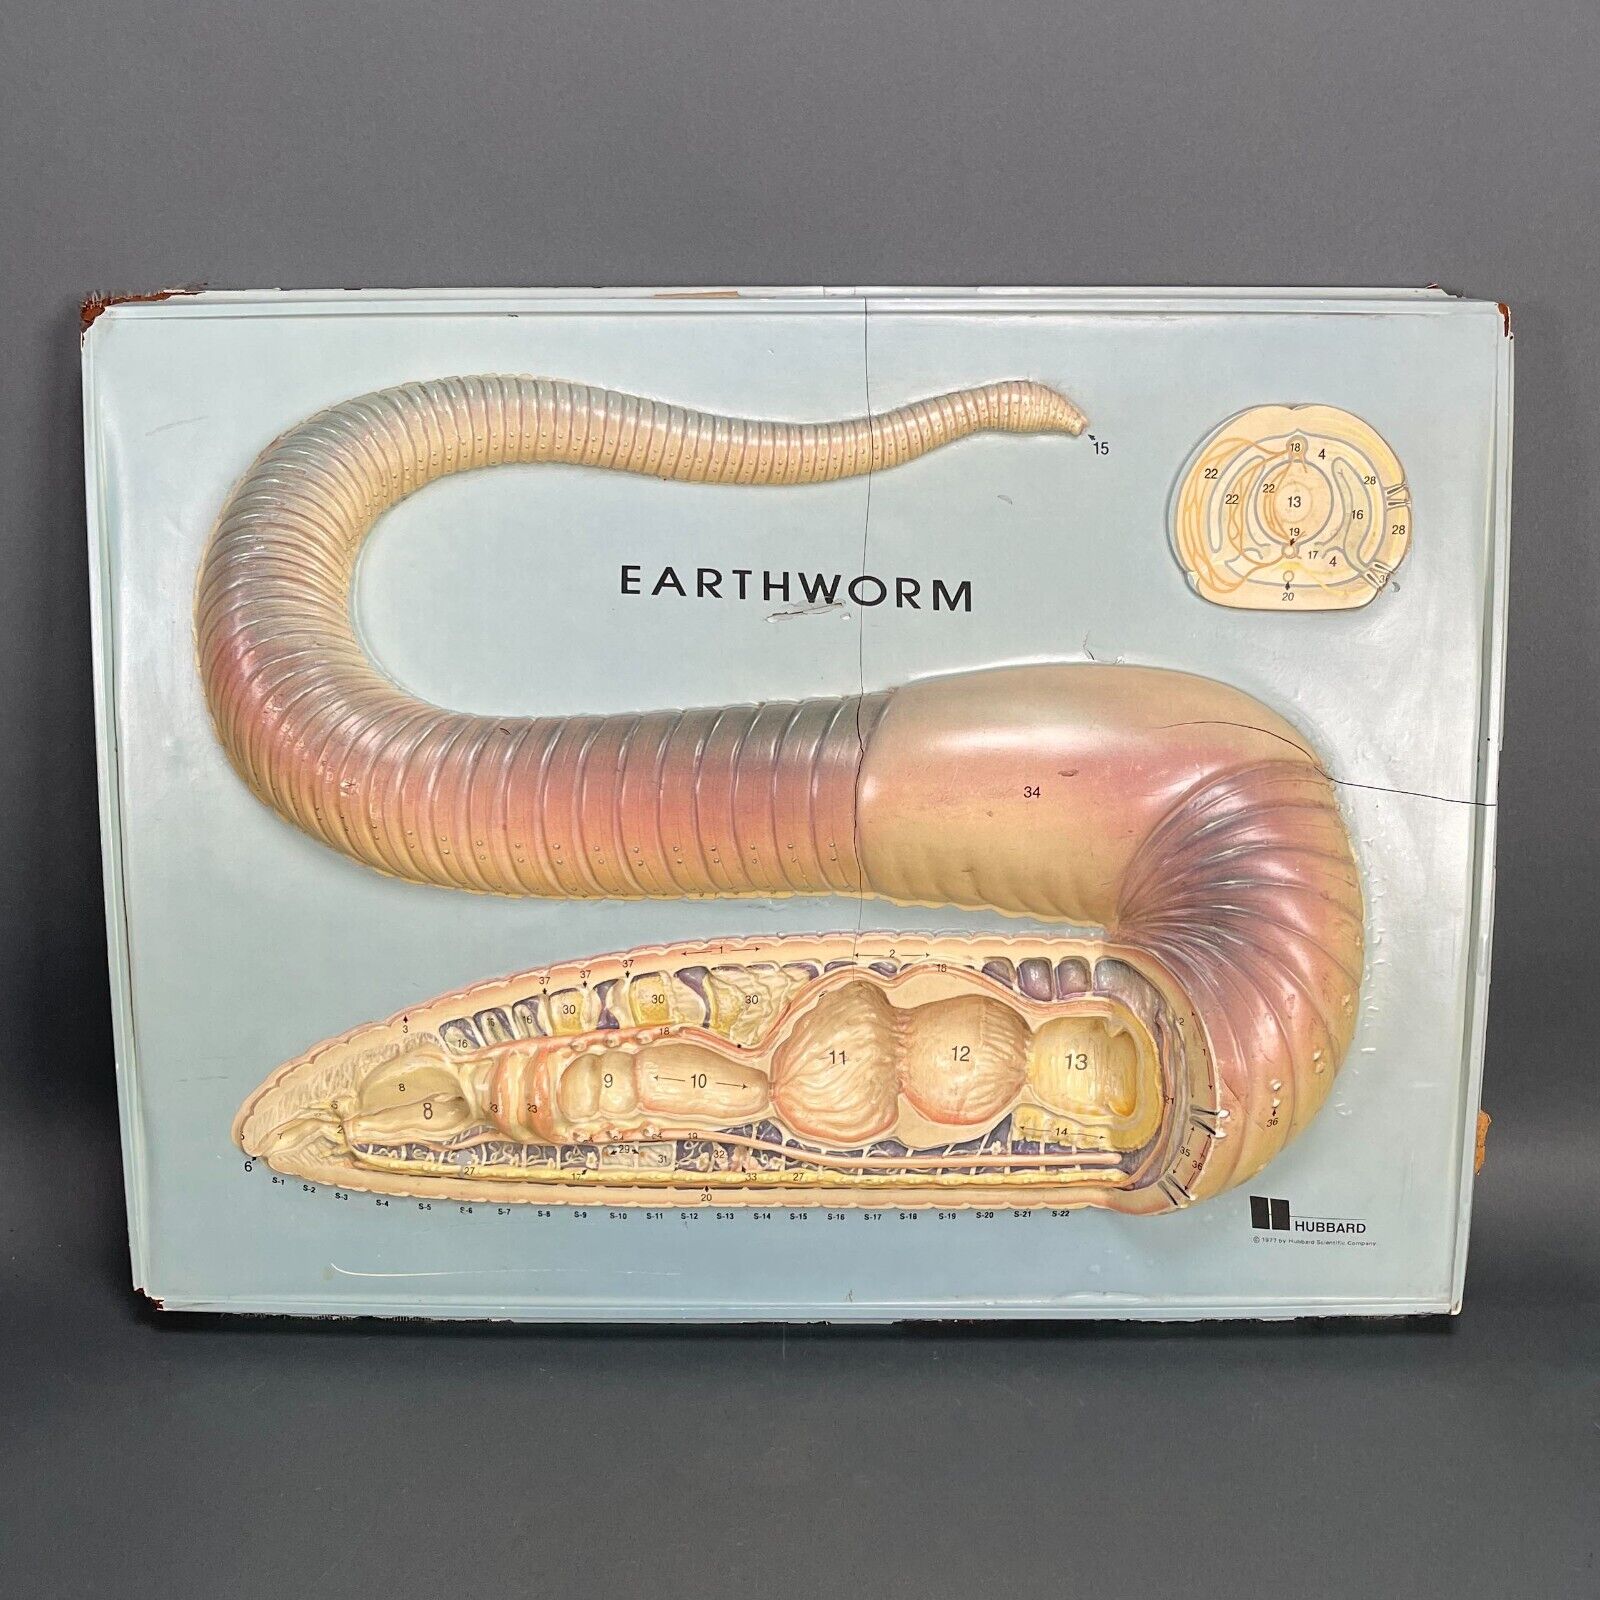 Vintage 1977 Hubbard Scientific 3D Plastic Earthworm Display Anatomy Chart Prop